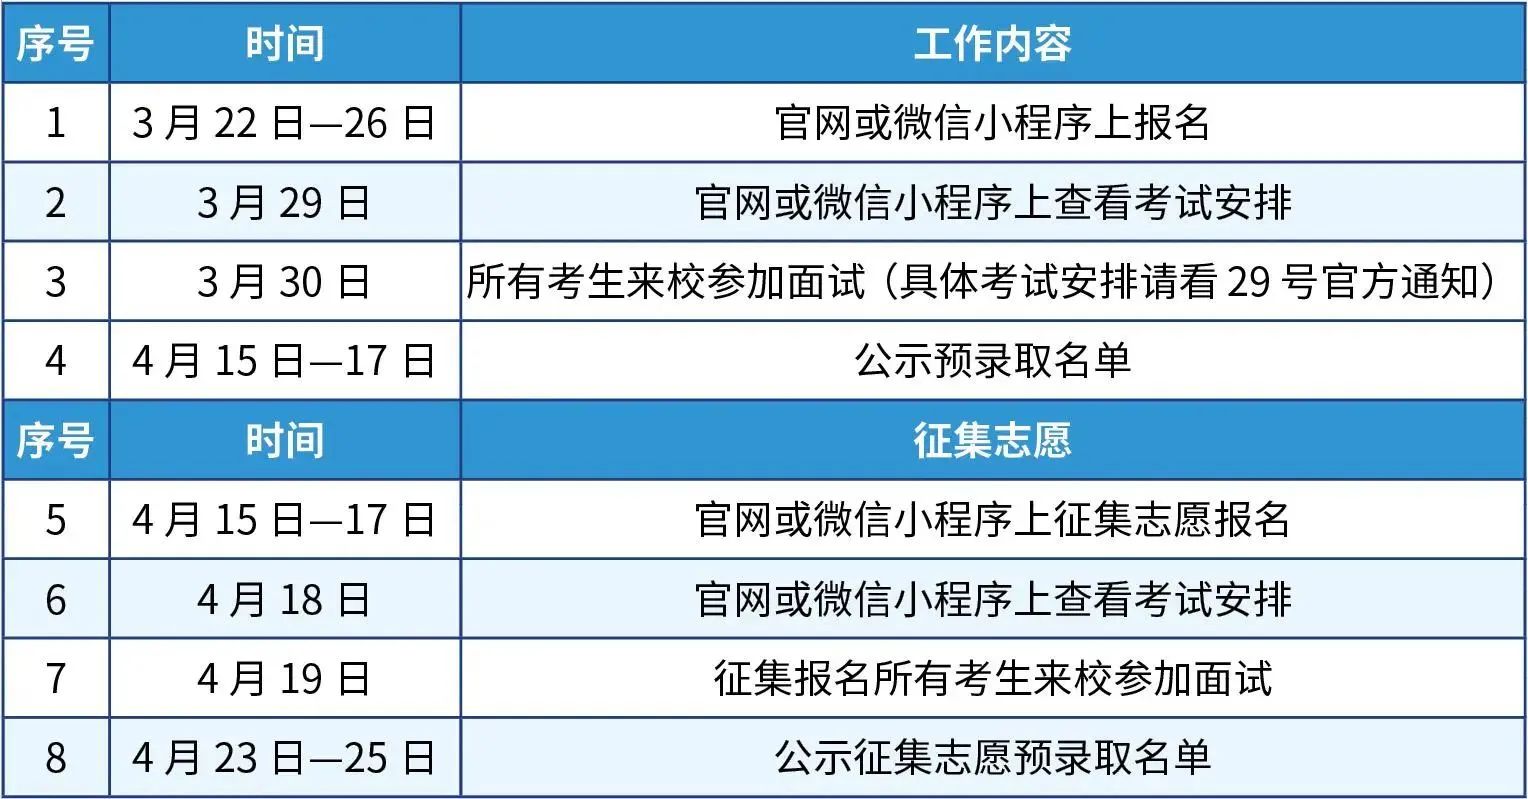 024年北京交通职业技术学院高职自主招生报名面试时间安排